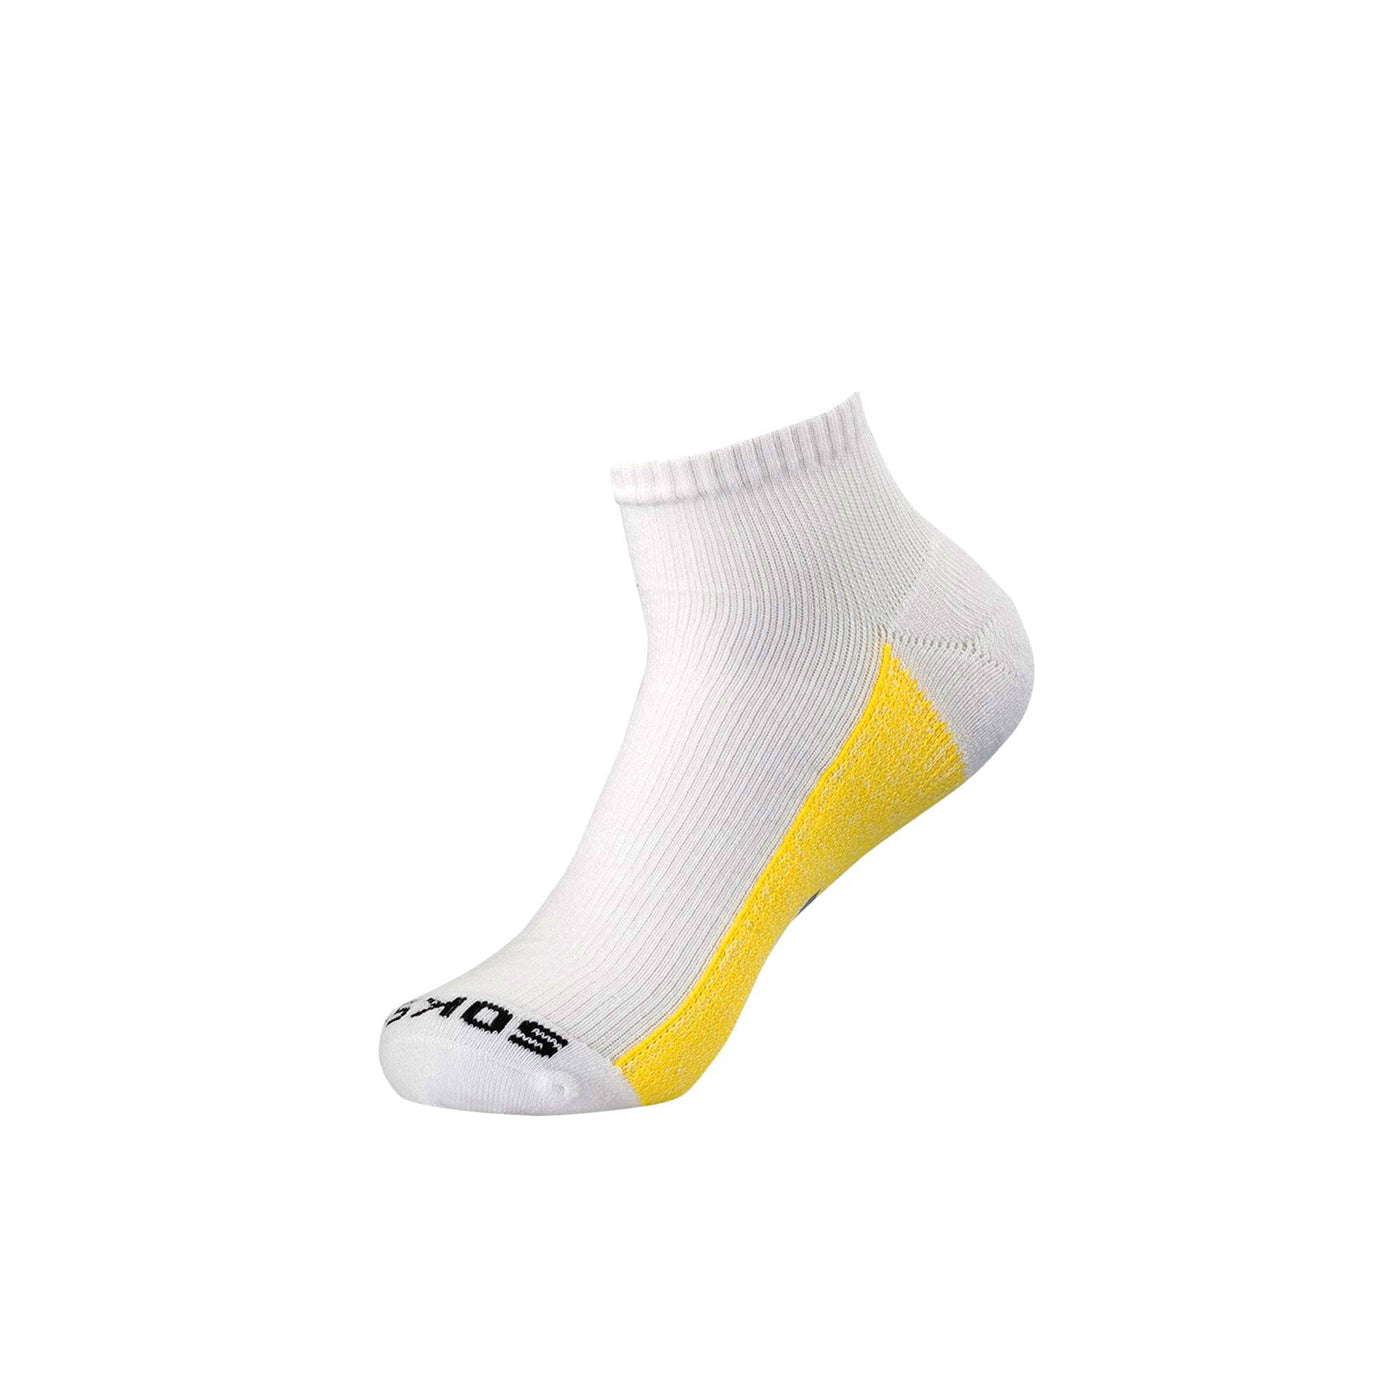 White Athletic Quarter Sock athletic socks ArchTek Women's Medium (sizes 8-10.5) White